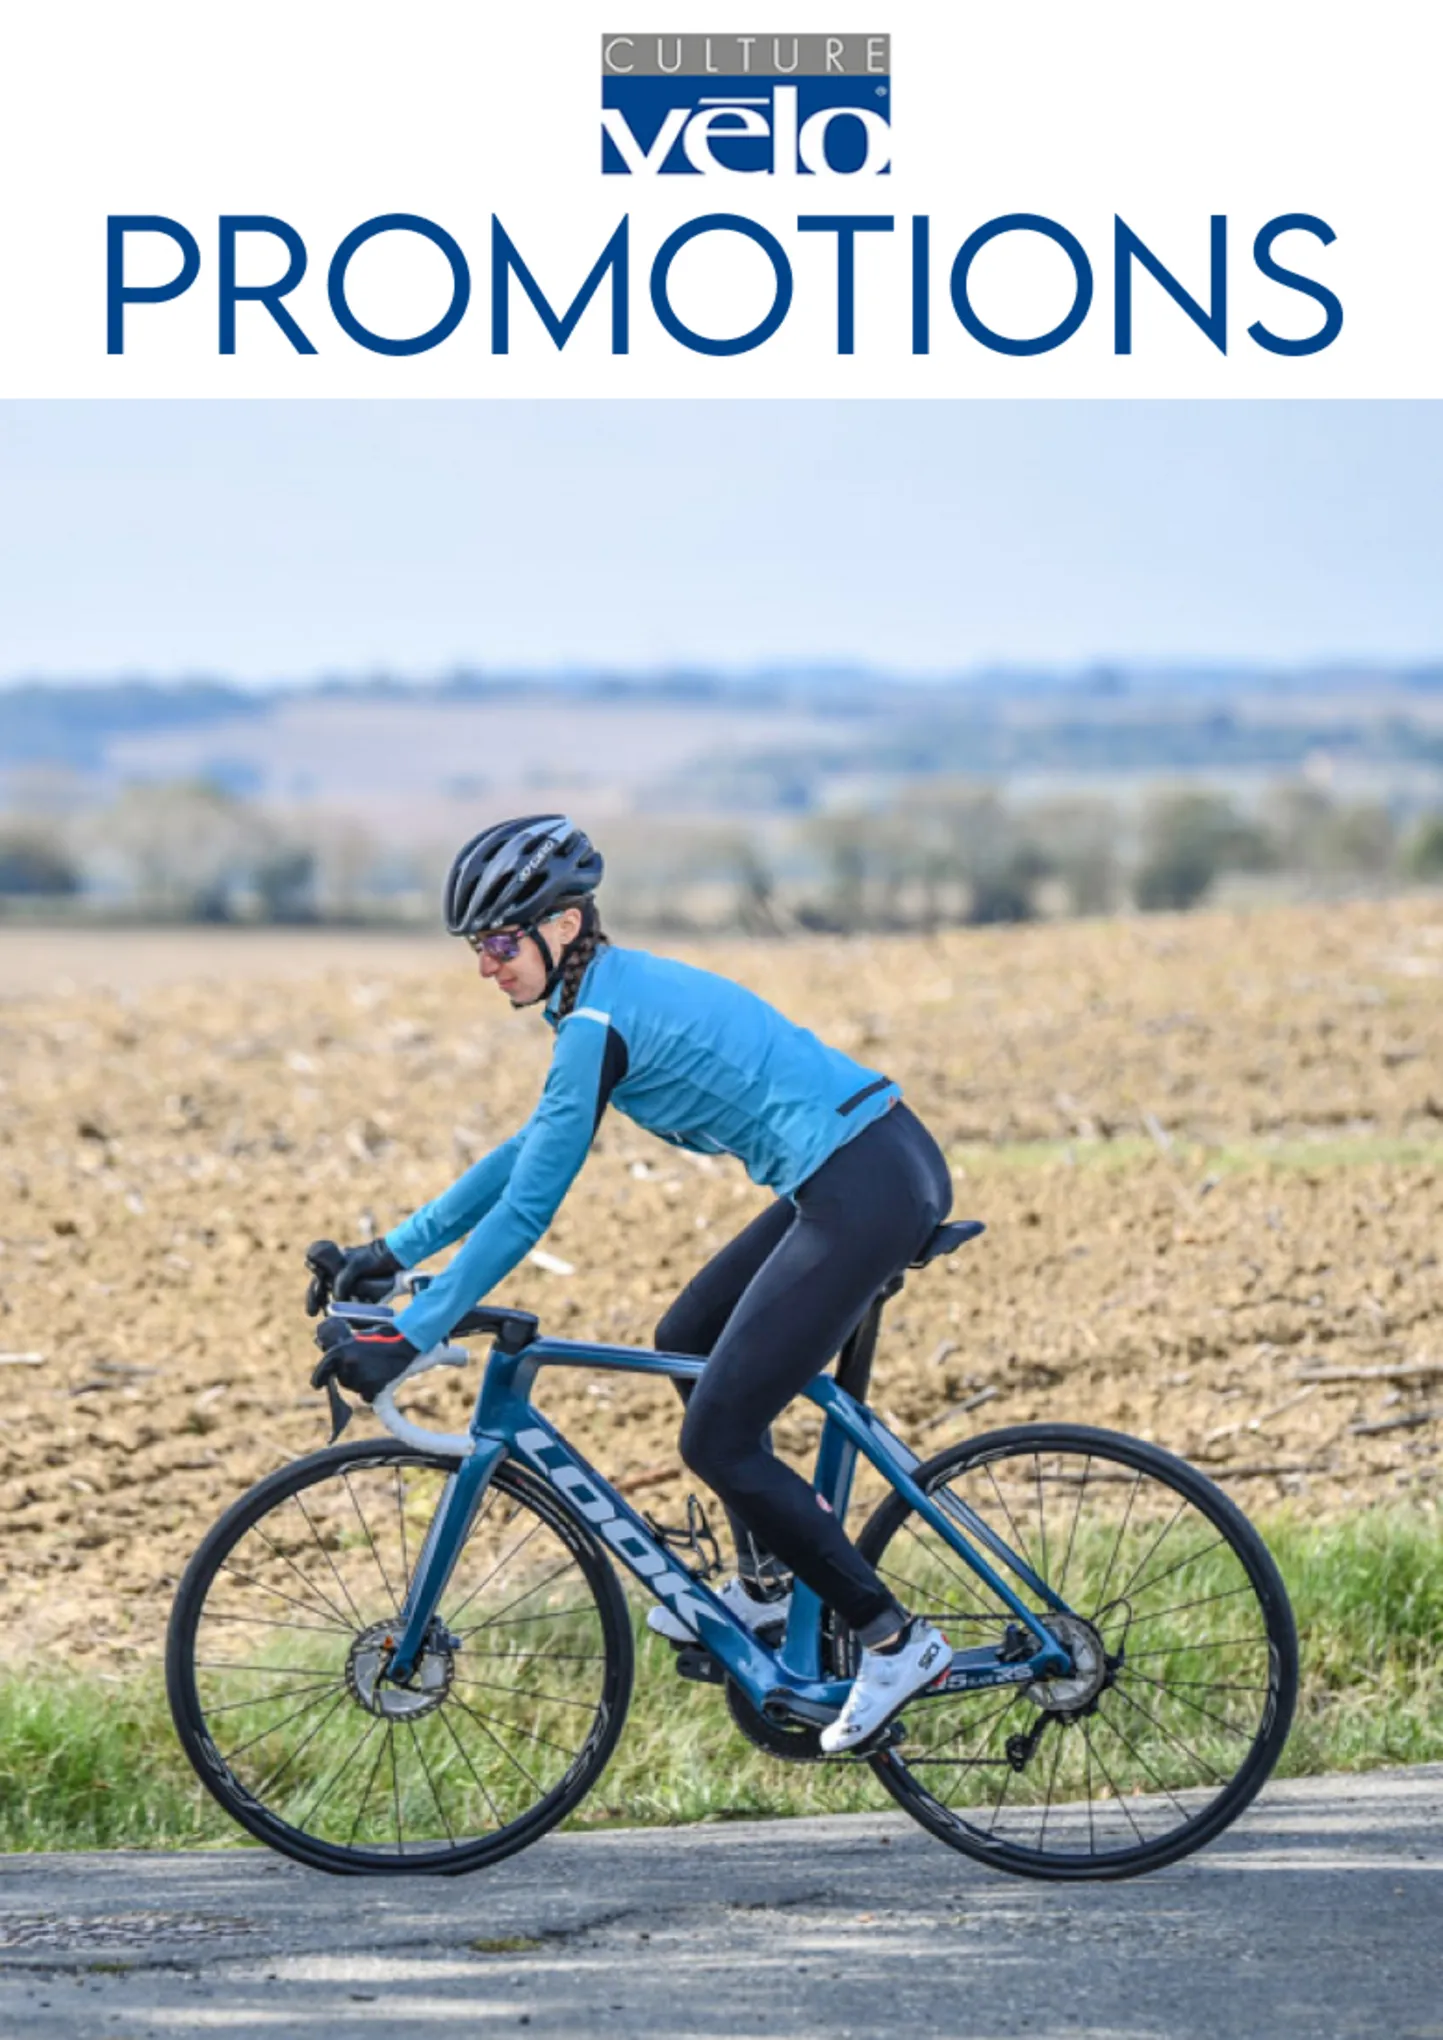 Catalogue Promotions Culture Vélo, page 00001